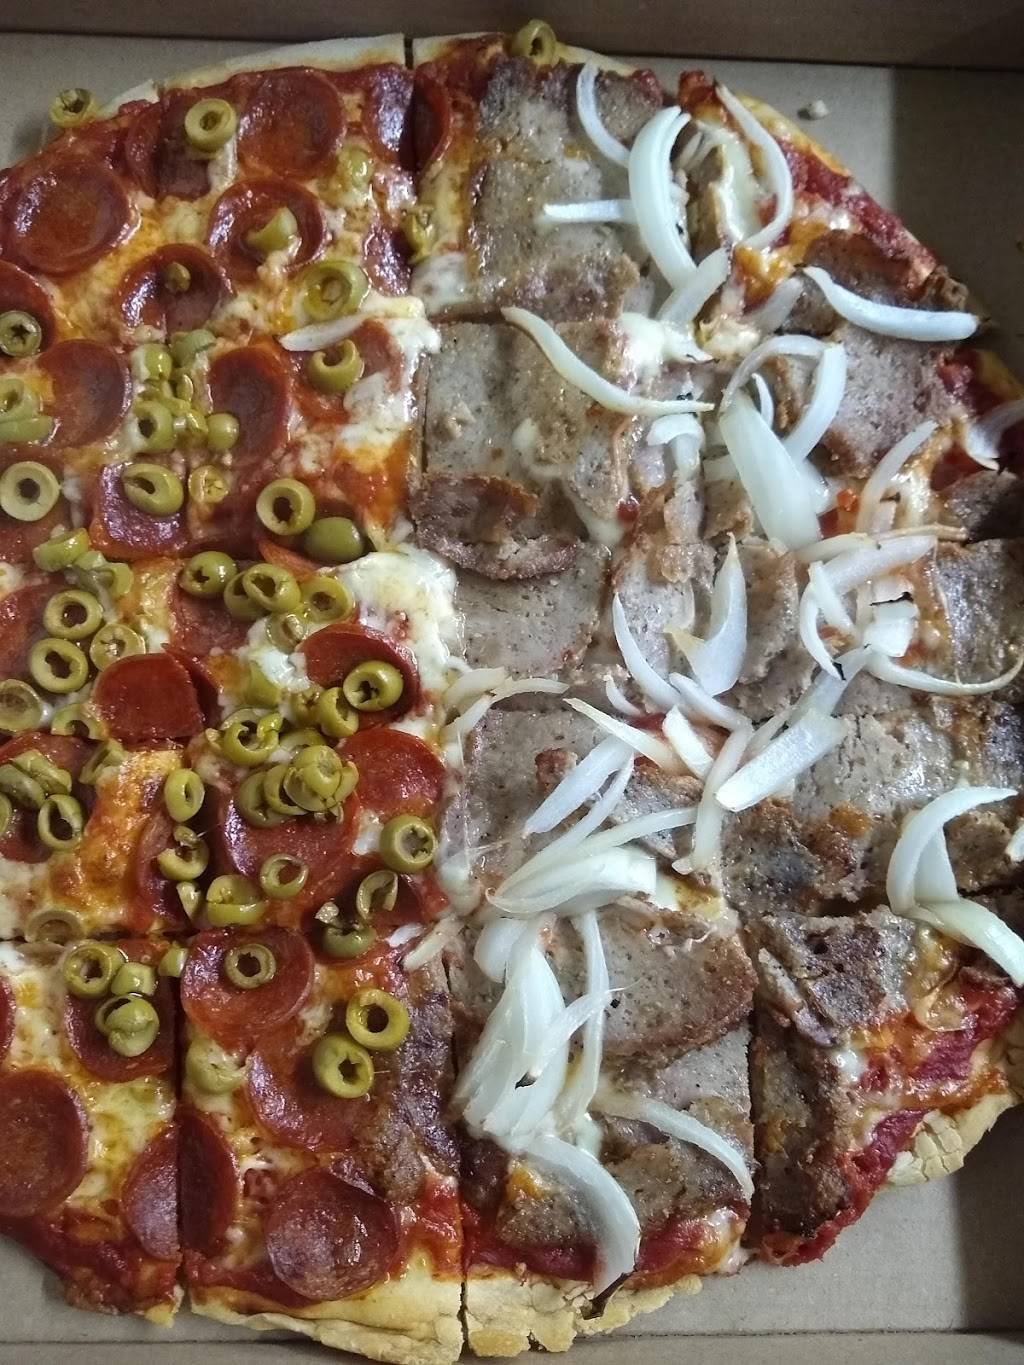 Gattos Pizza | 2928 N High St, Columbus, OH 43202, USA | Phone: (614) 263-3737